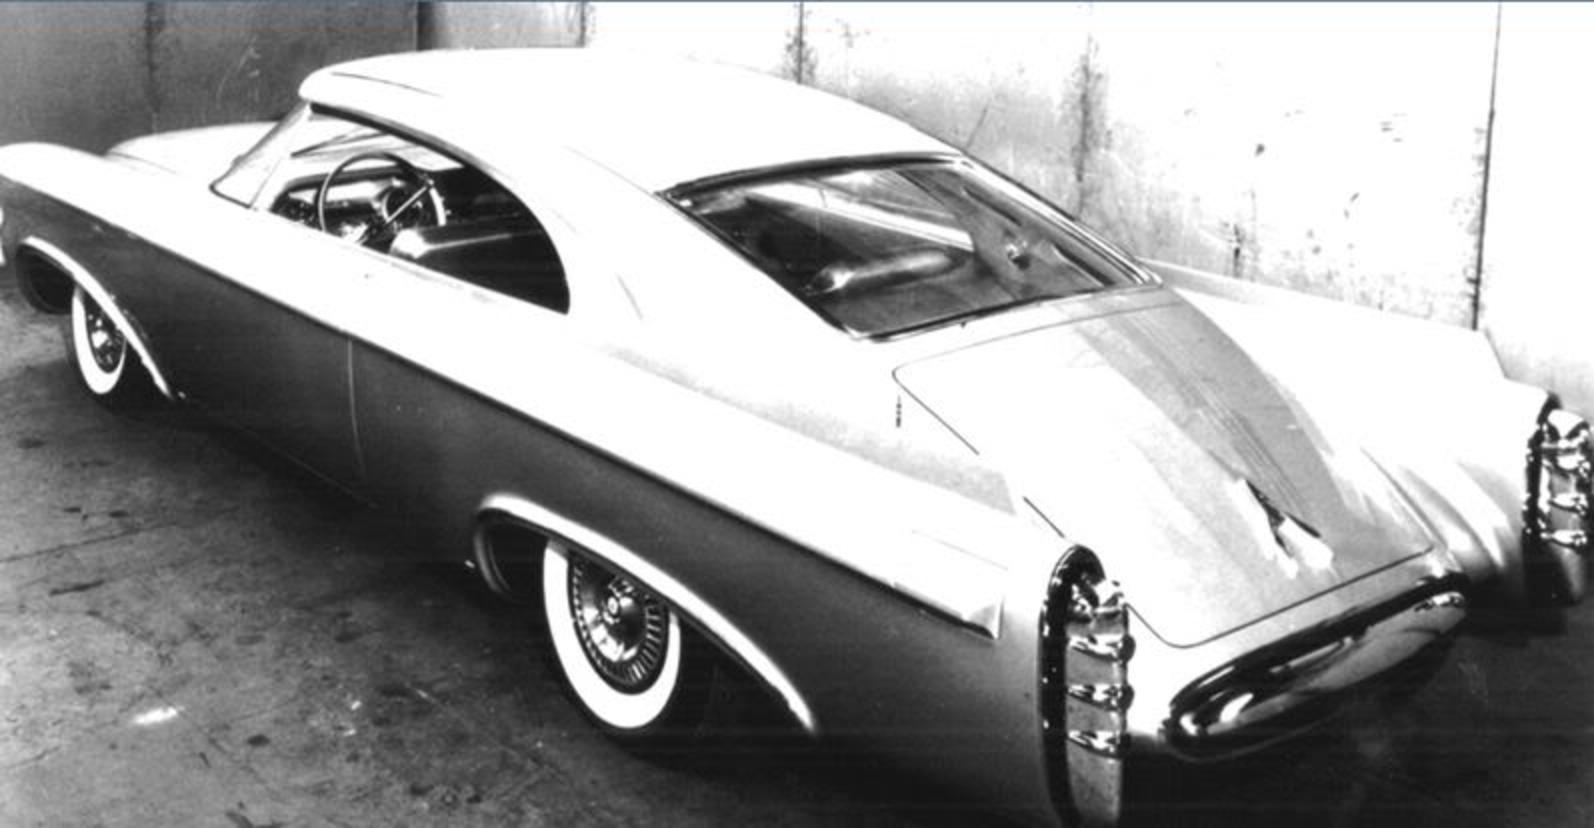 Dodge Firearrow concept car, circa 1954.